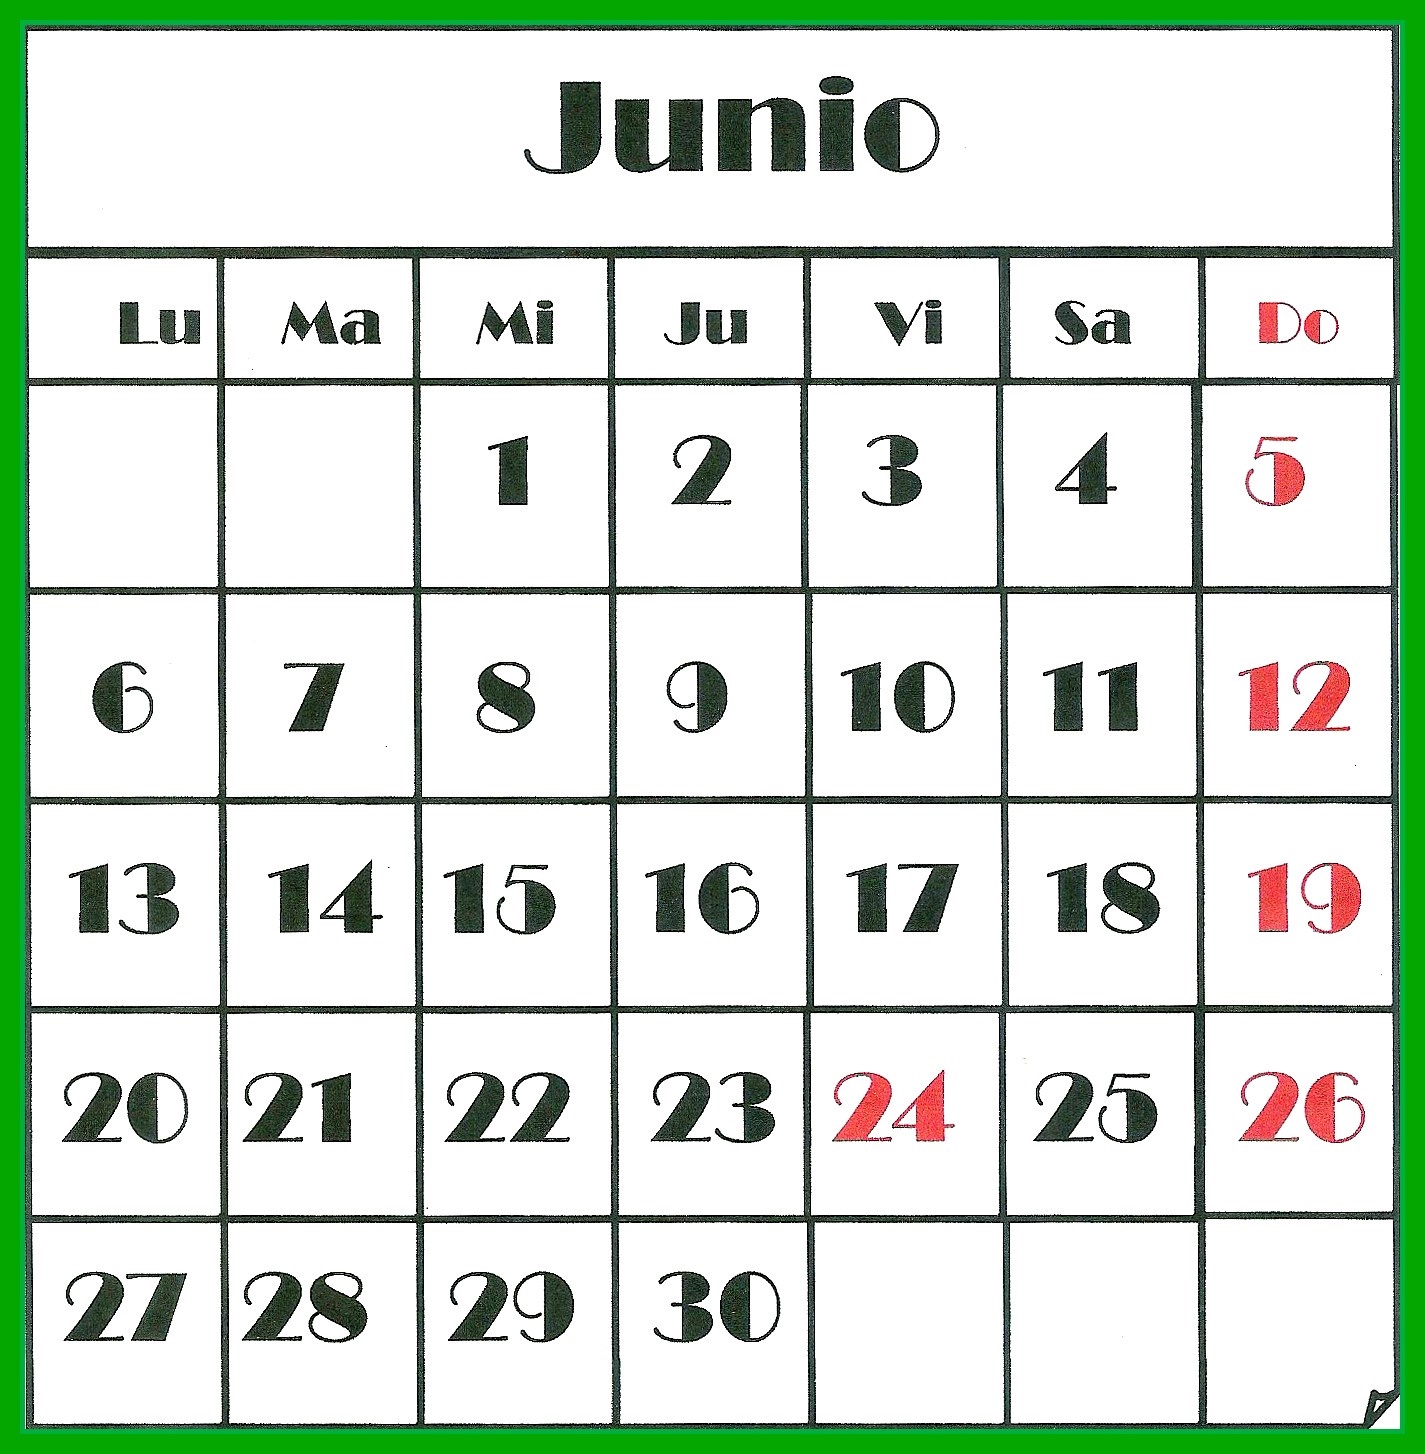 Nuevo decreto! Junio tendra 31 dias